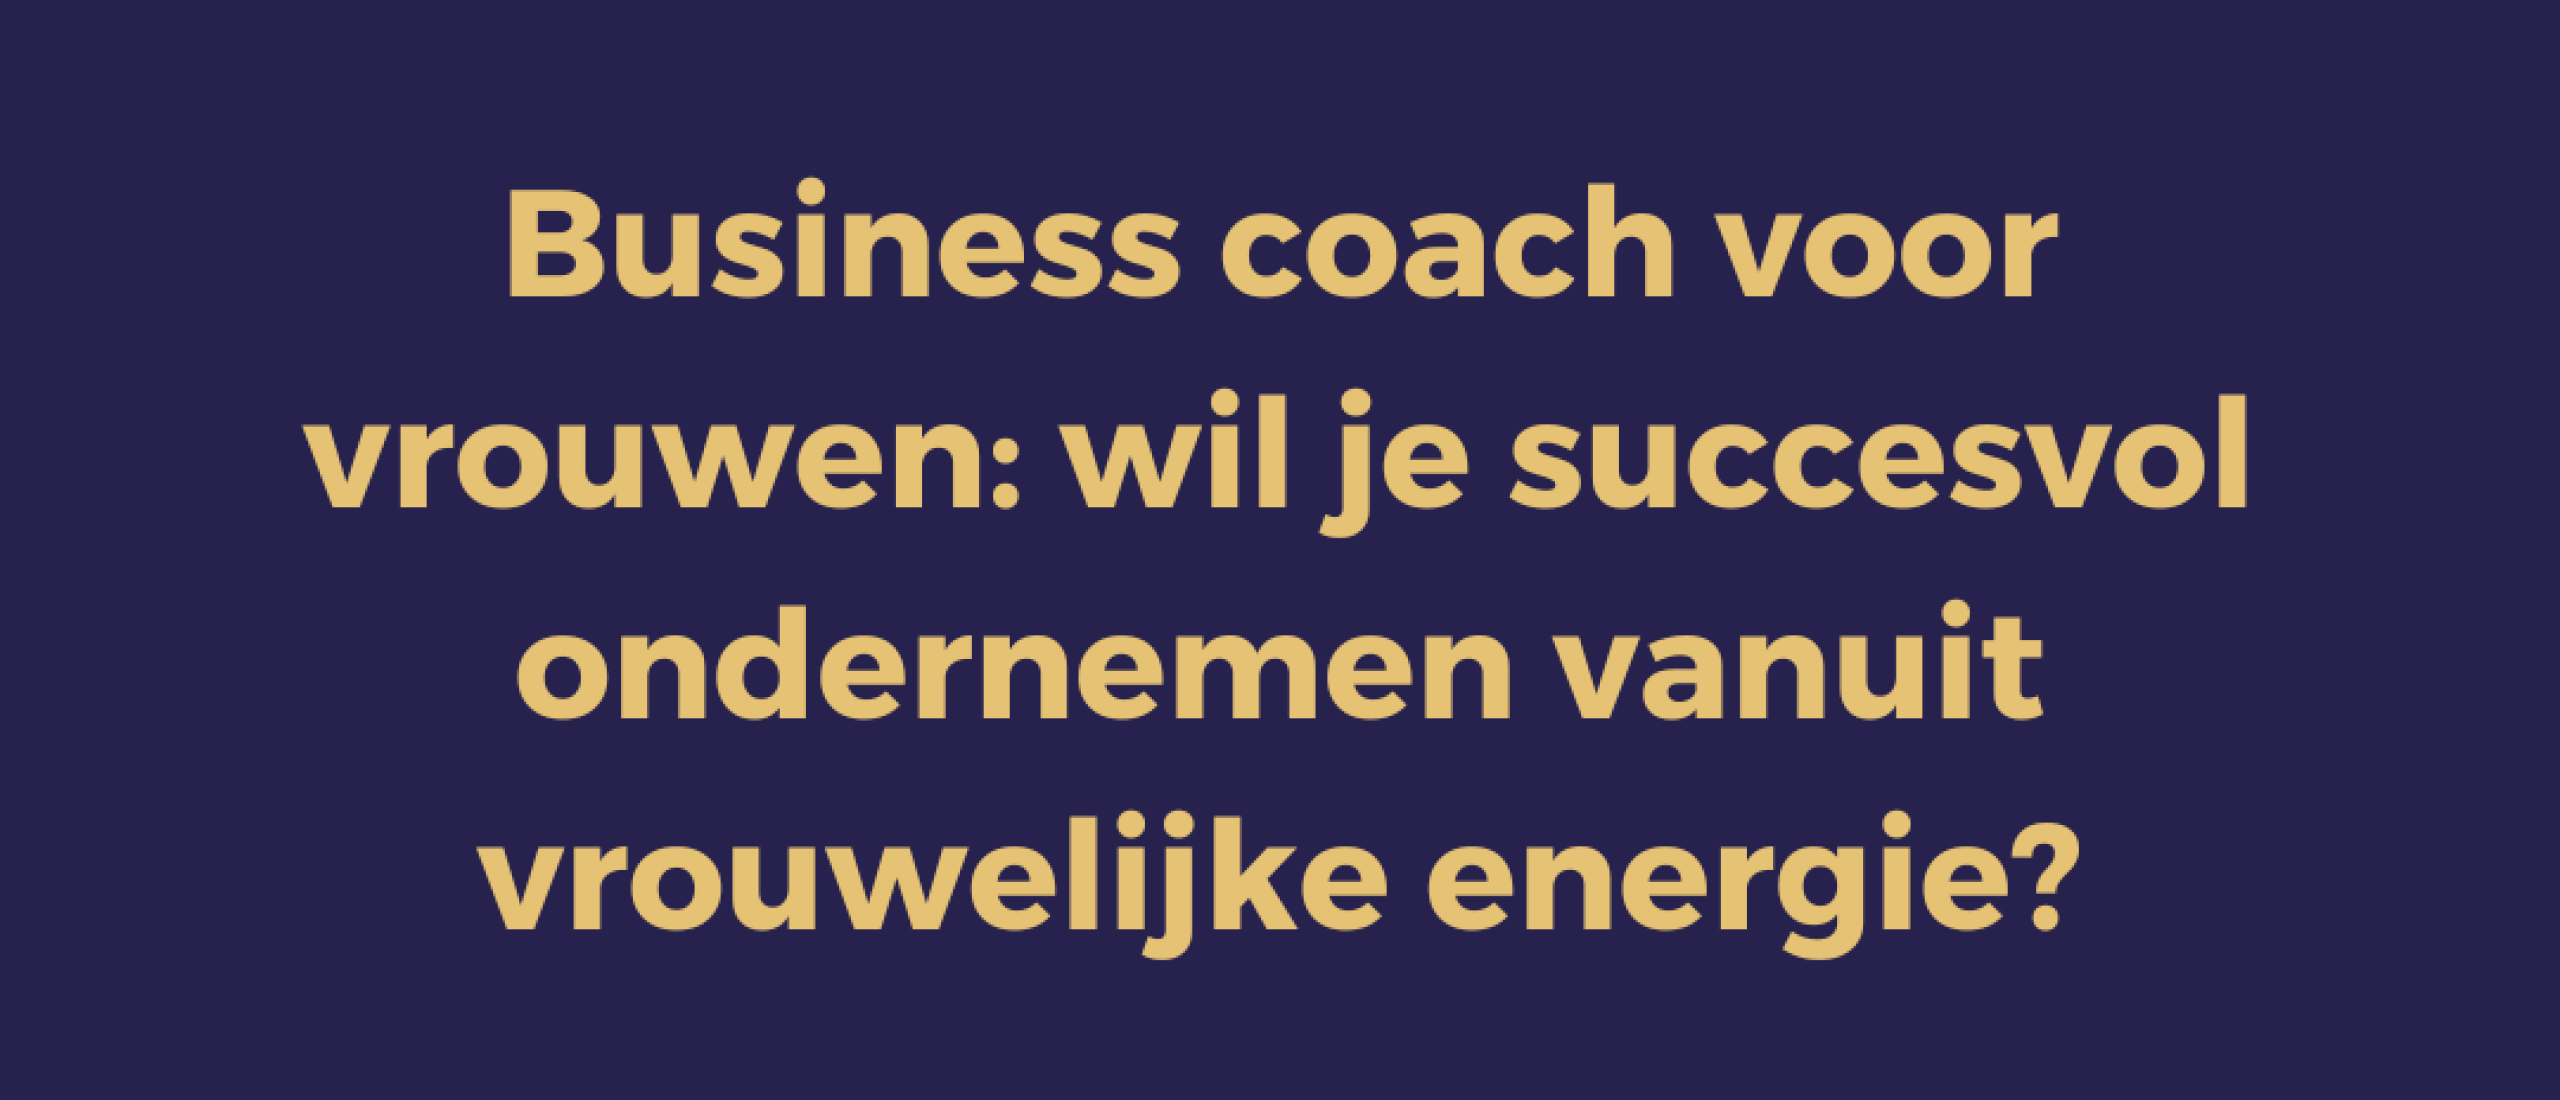 Business coach voor vrouwen, wil je succesvol ondernemen vanuit vrouwelijke energie?